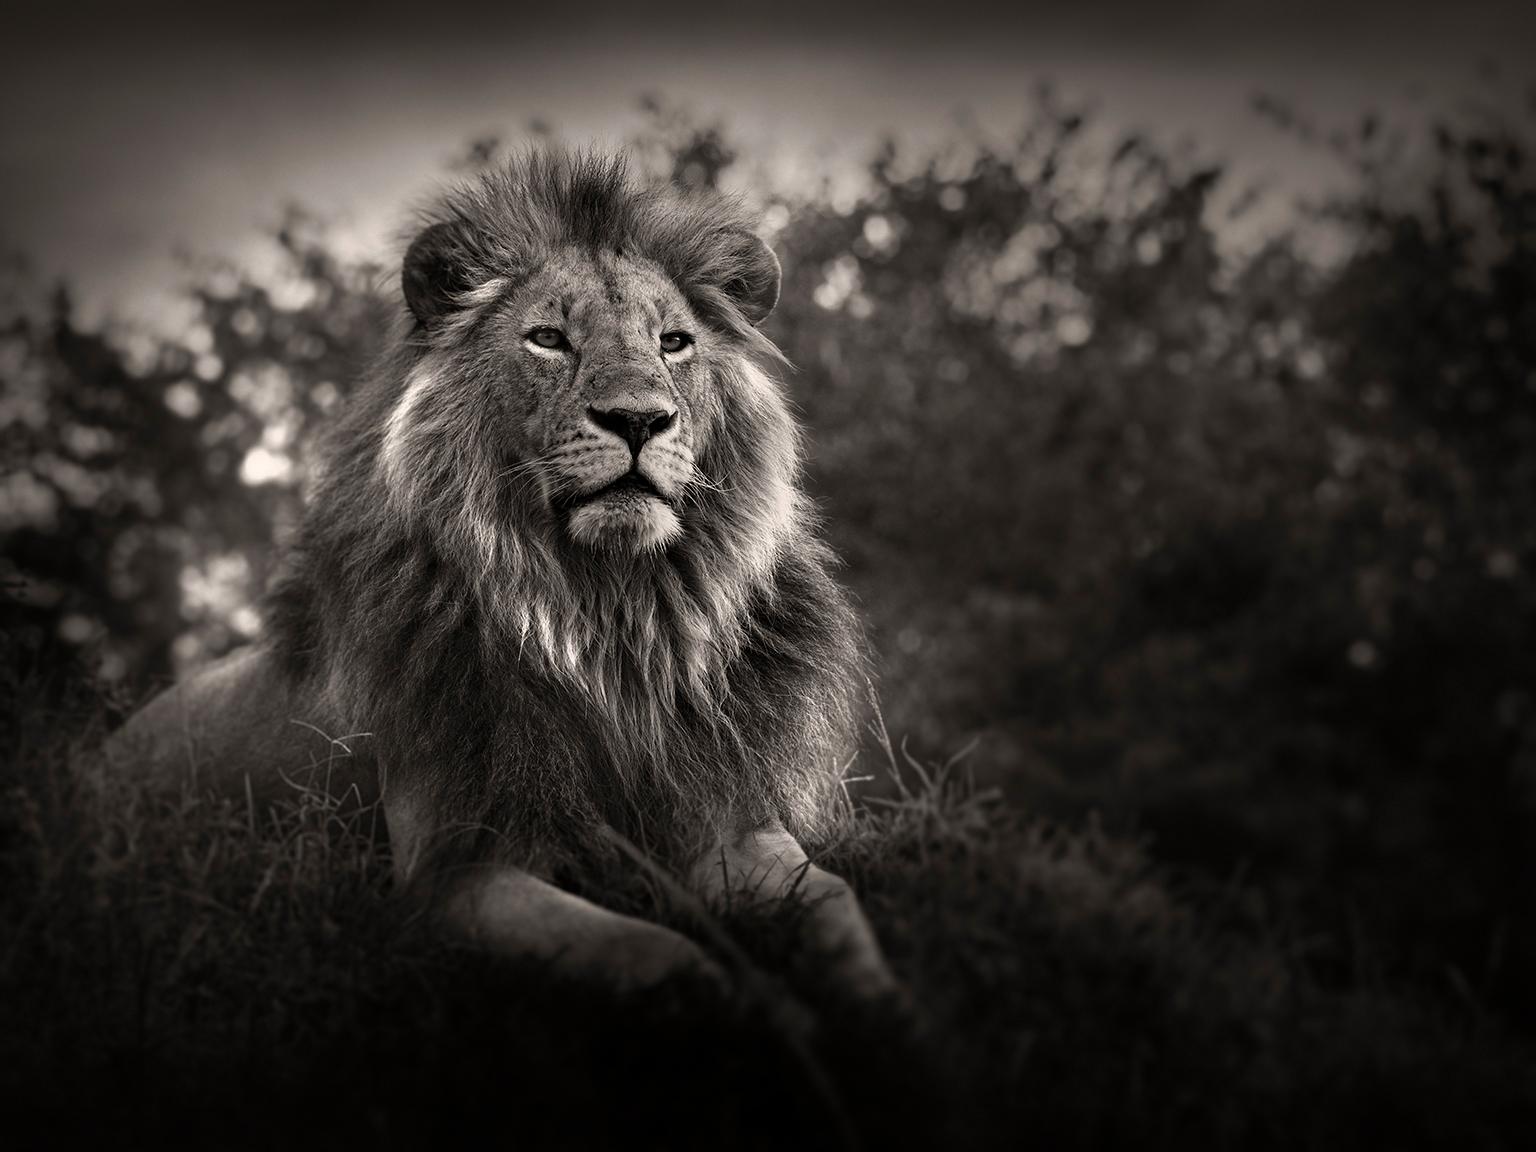 Orbanoti II, Lion, animal, wildlife, black and white photography